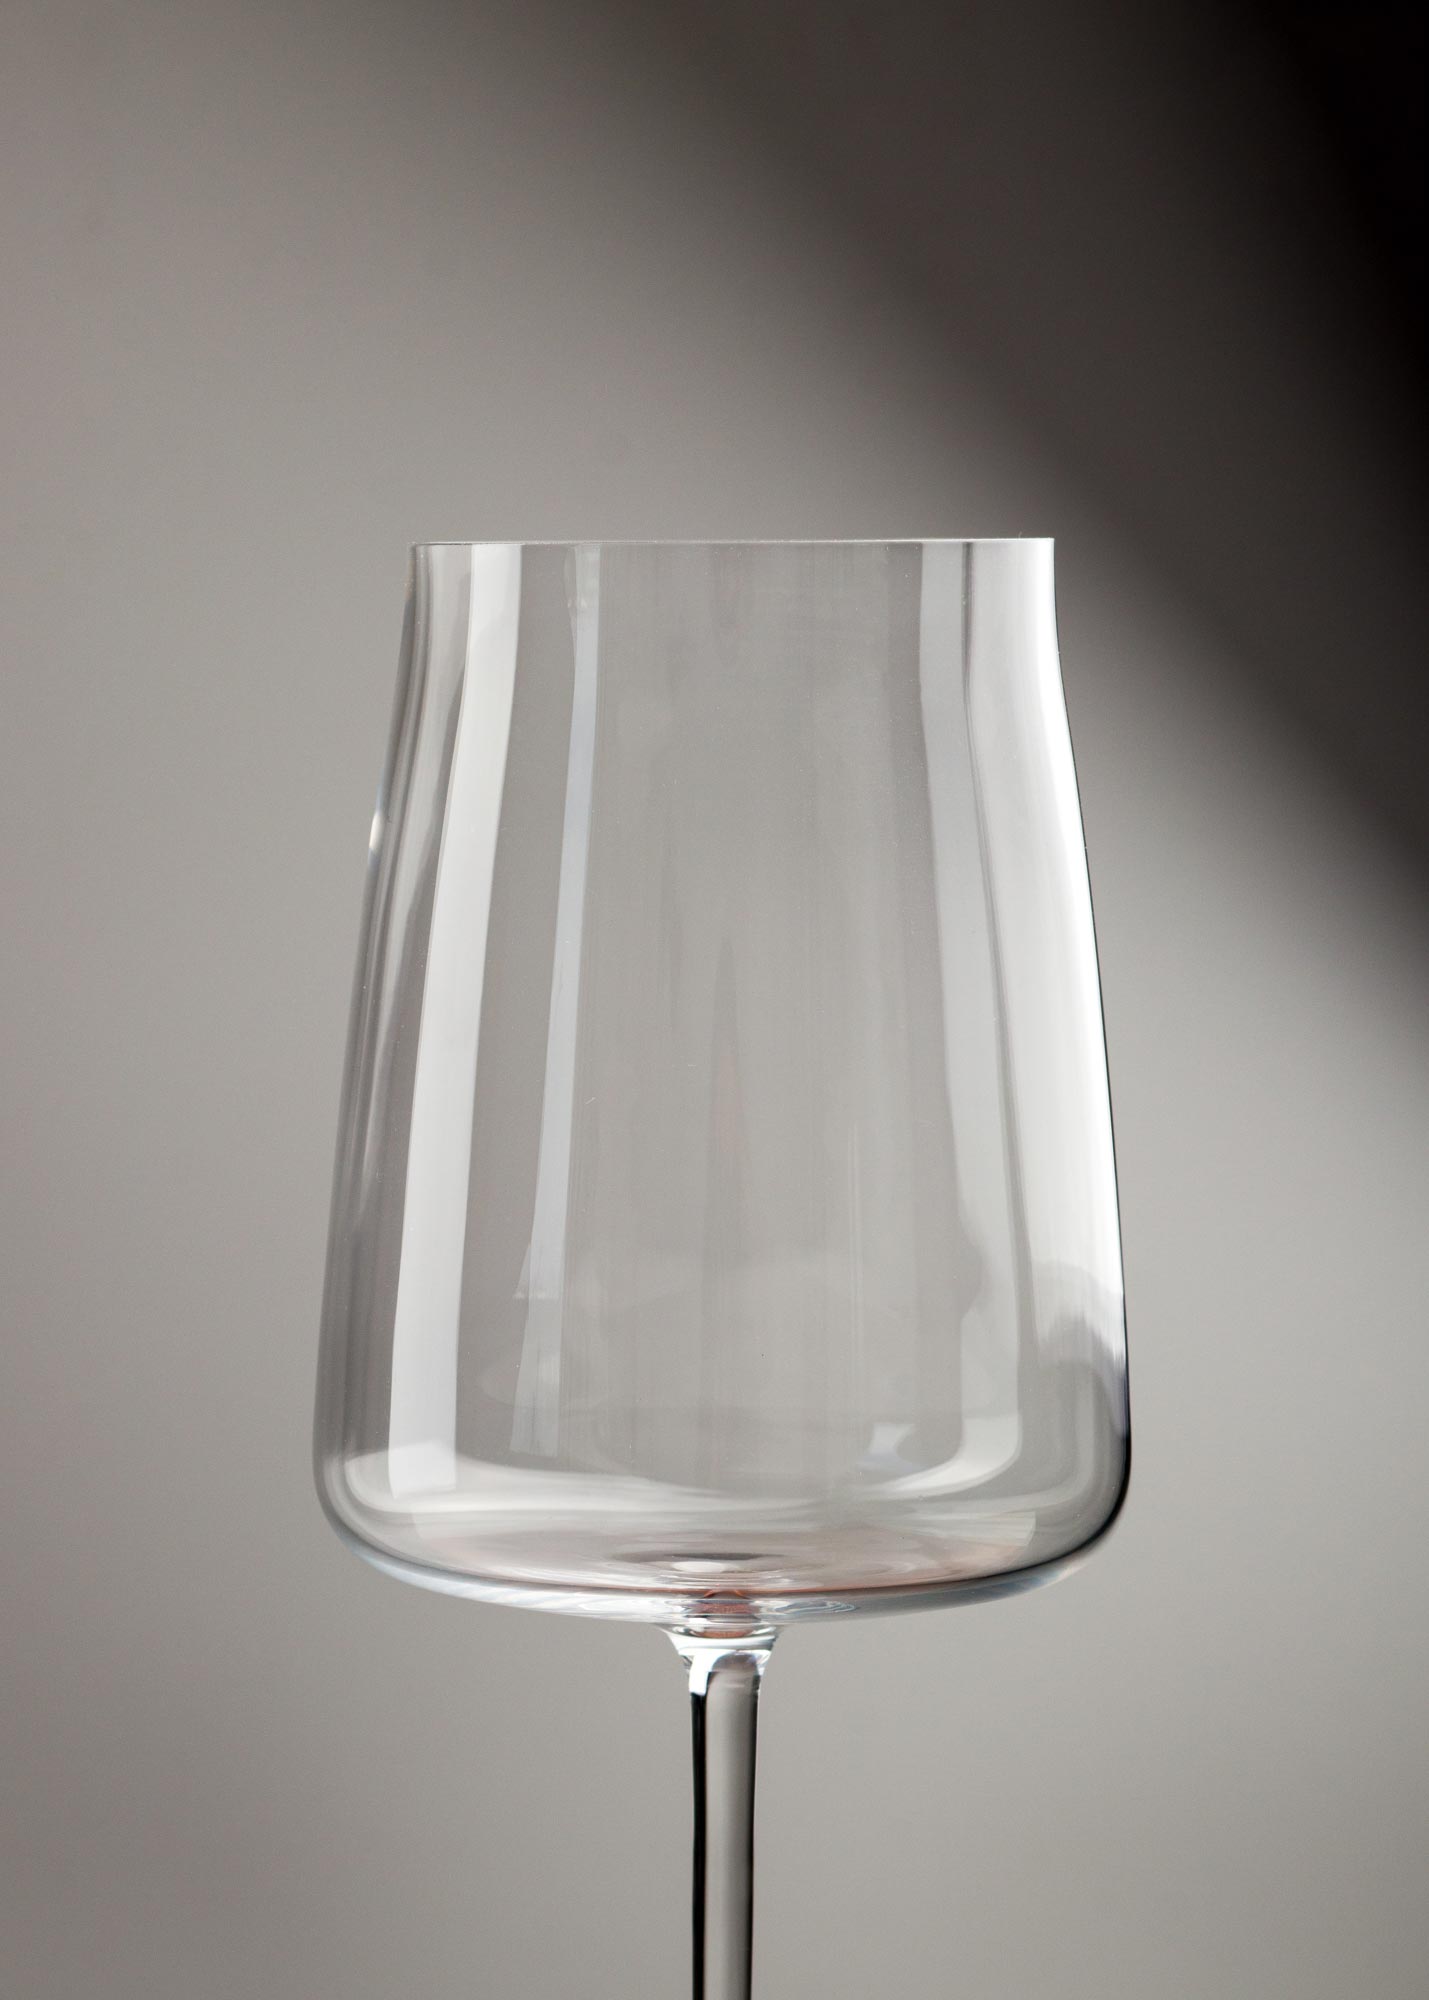 copa cristal transparente mahahome